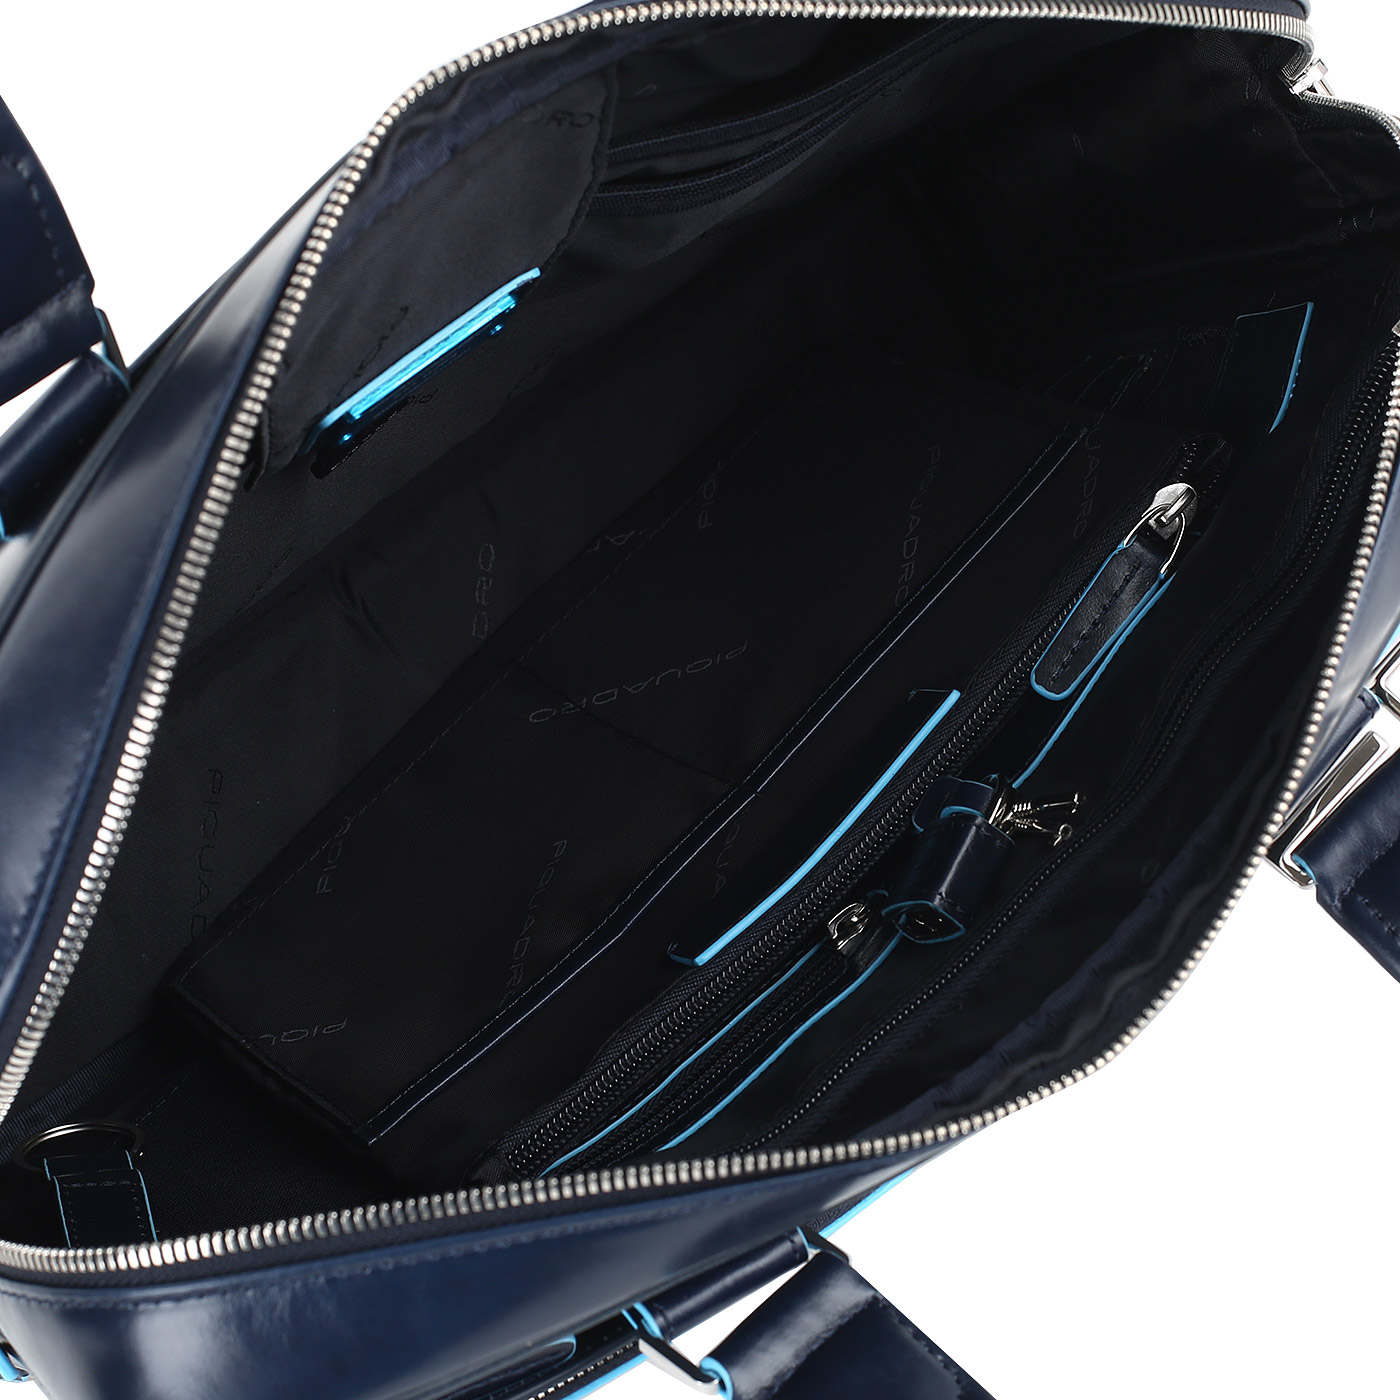 Деловая кожаная сумка с отделением для ноутбука Piquadro Blue square